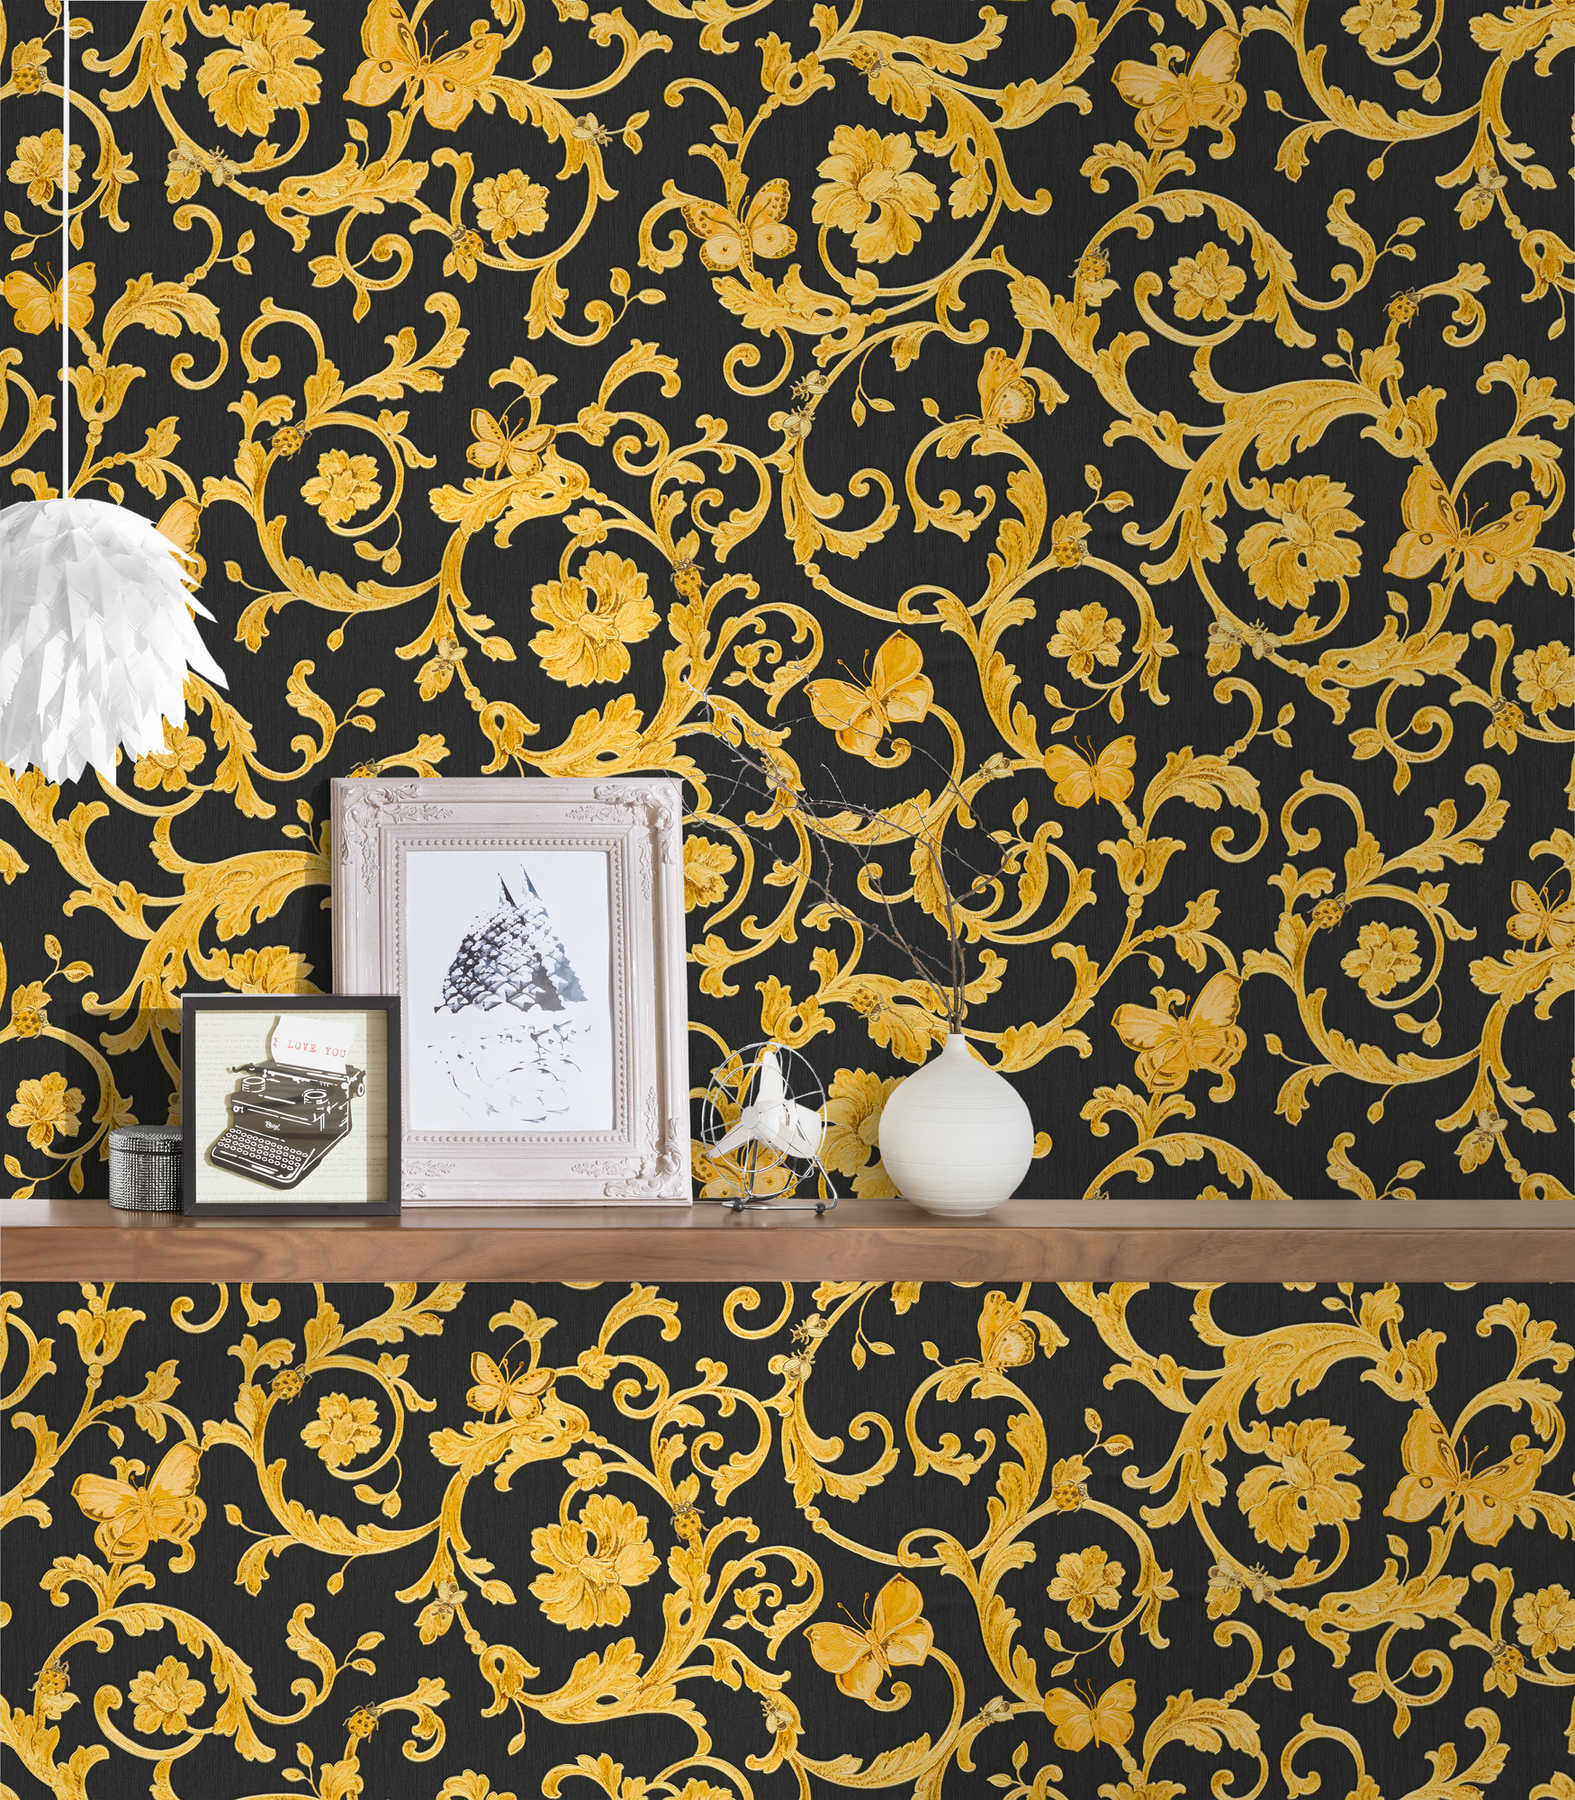             Schwarze VERSACE Tapete mit Gold-Ornamenten & Schmetterling
        